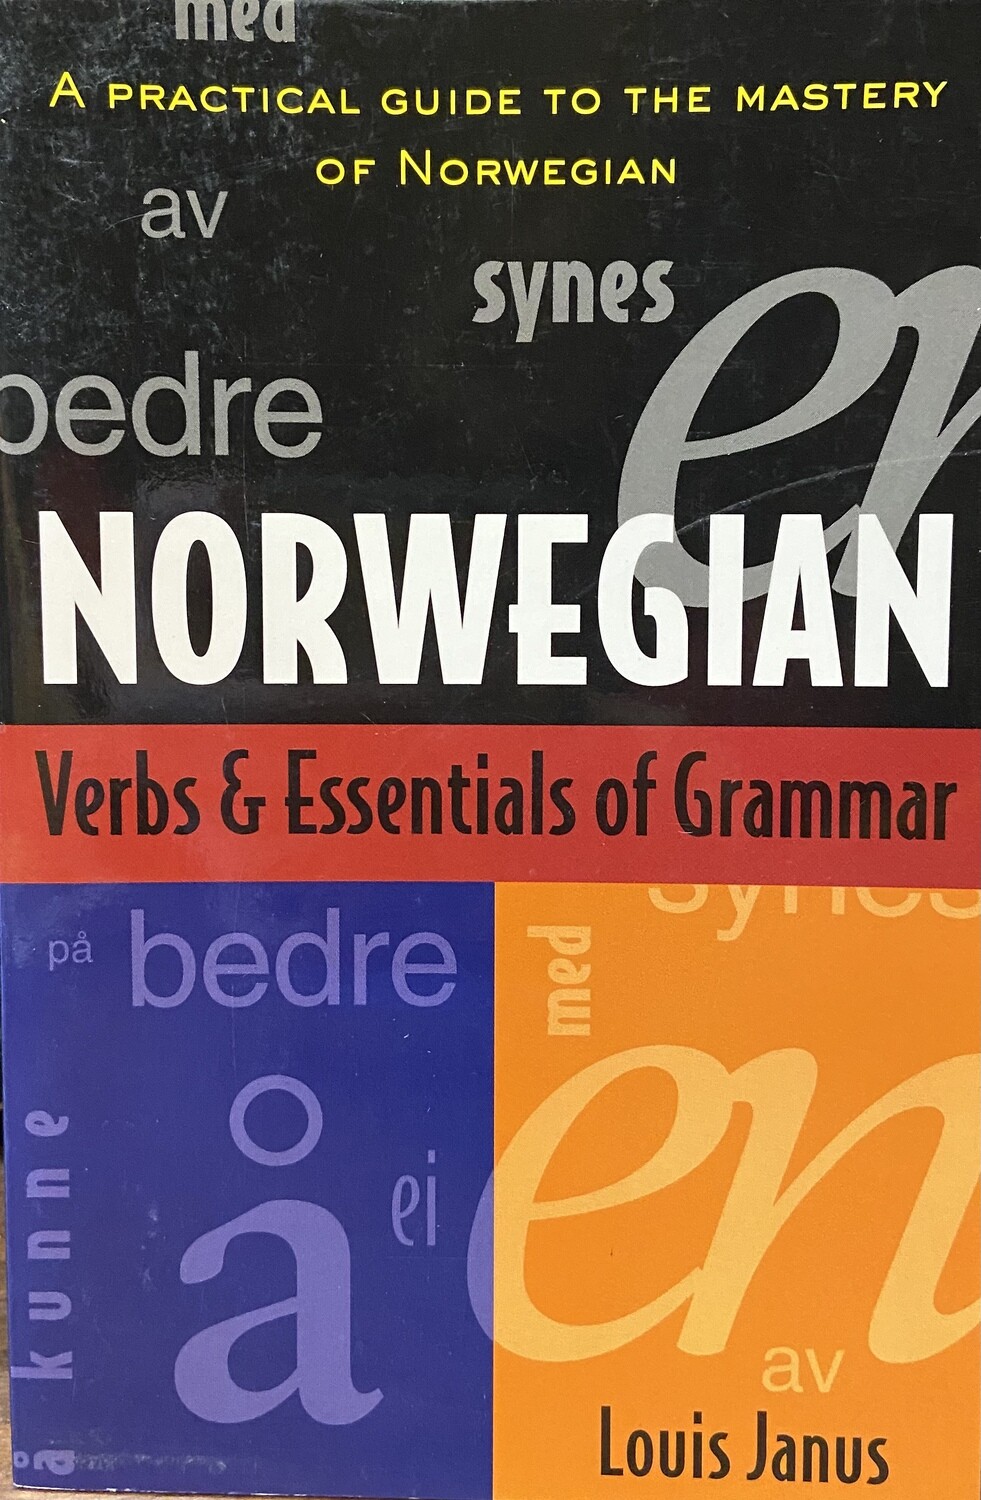 Norwegian: Verbs & Essentials of Grammar